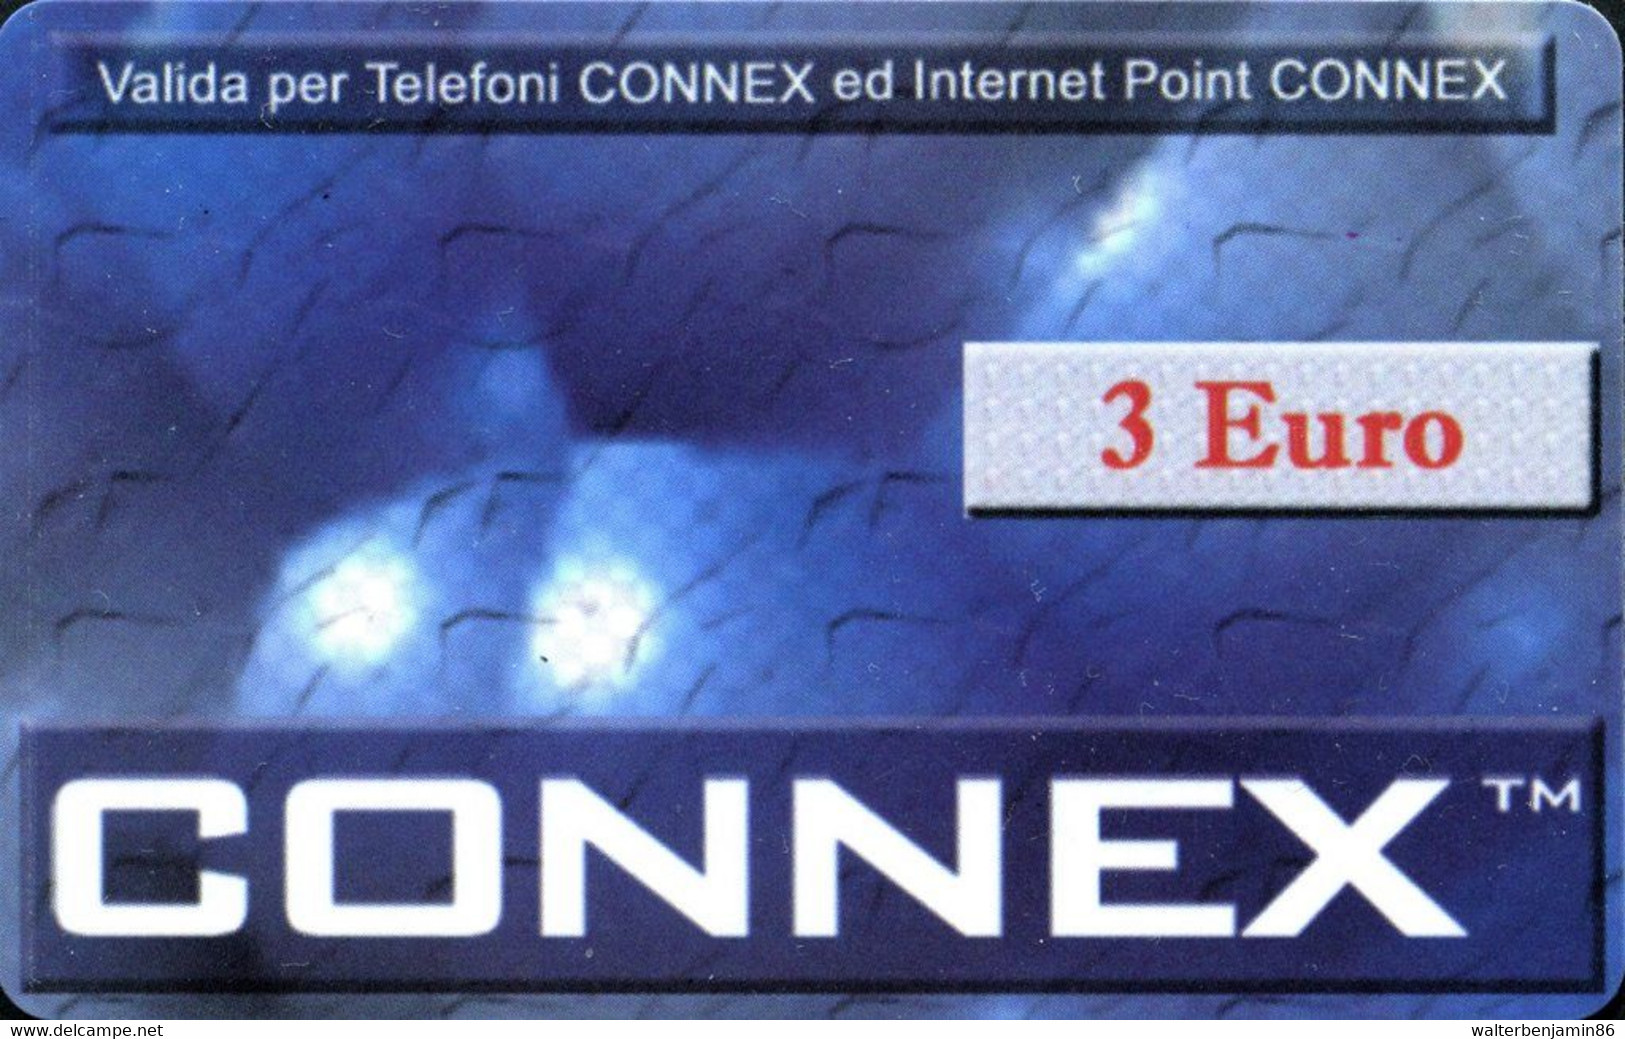 C&C 9060 A SCHEDA TELFONICA USI SPECIALI CONNEX 3 EURO DUMMY SENZA CHIP - Sonderzwecke